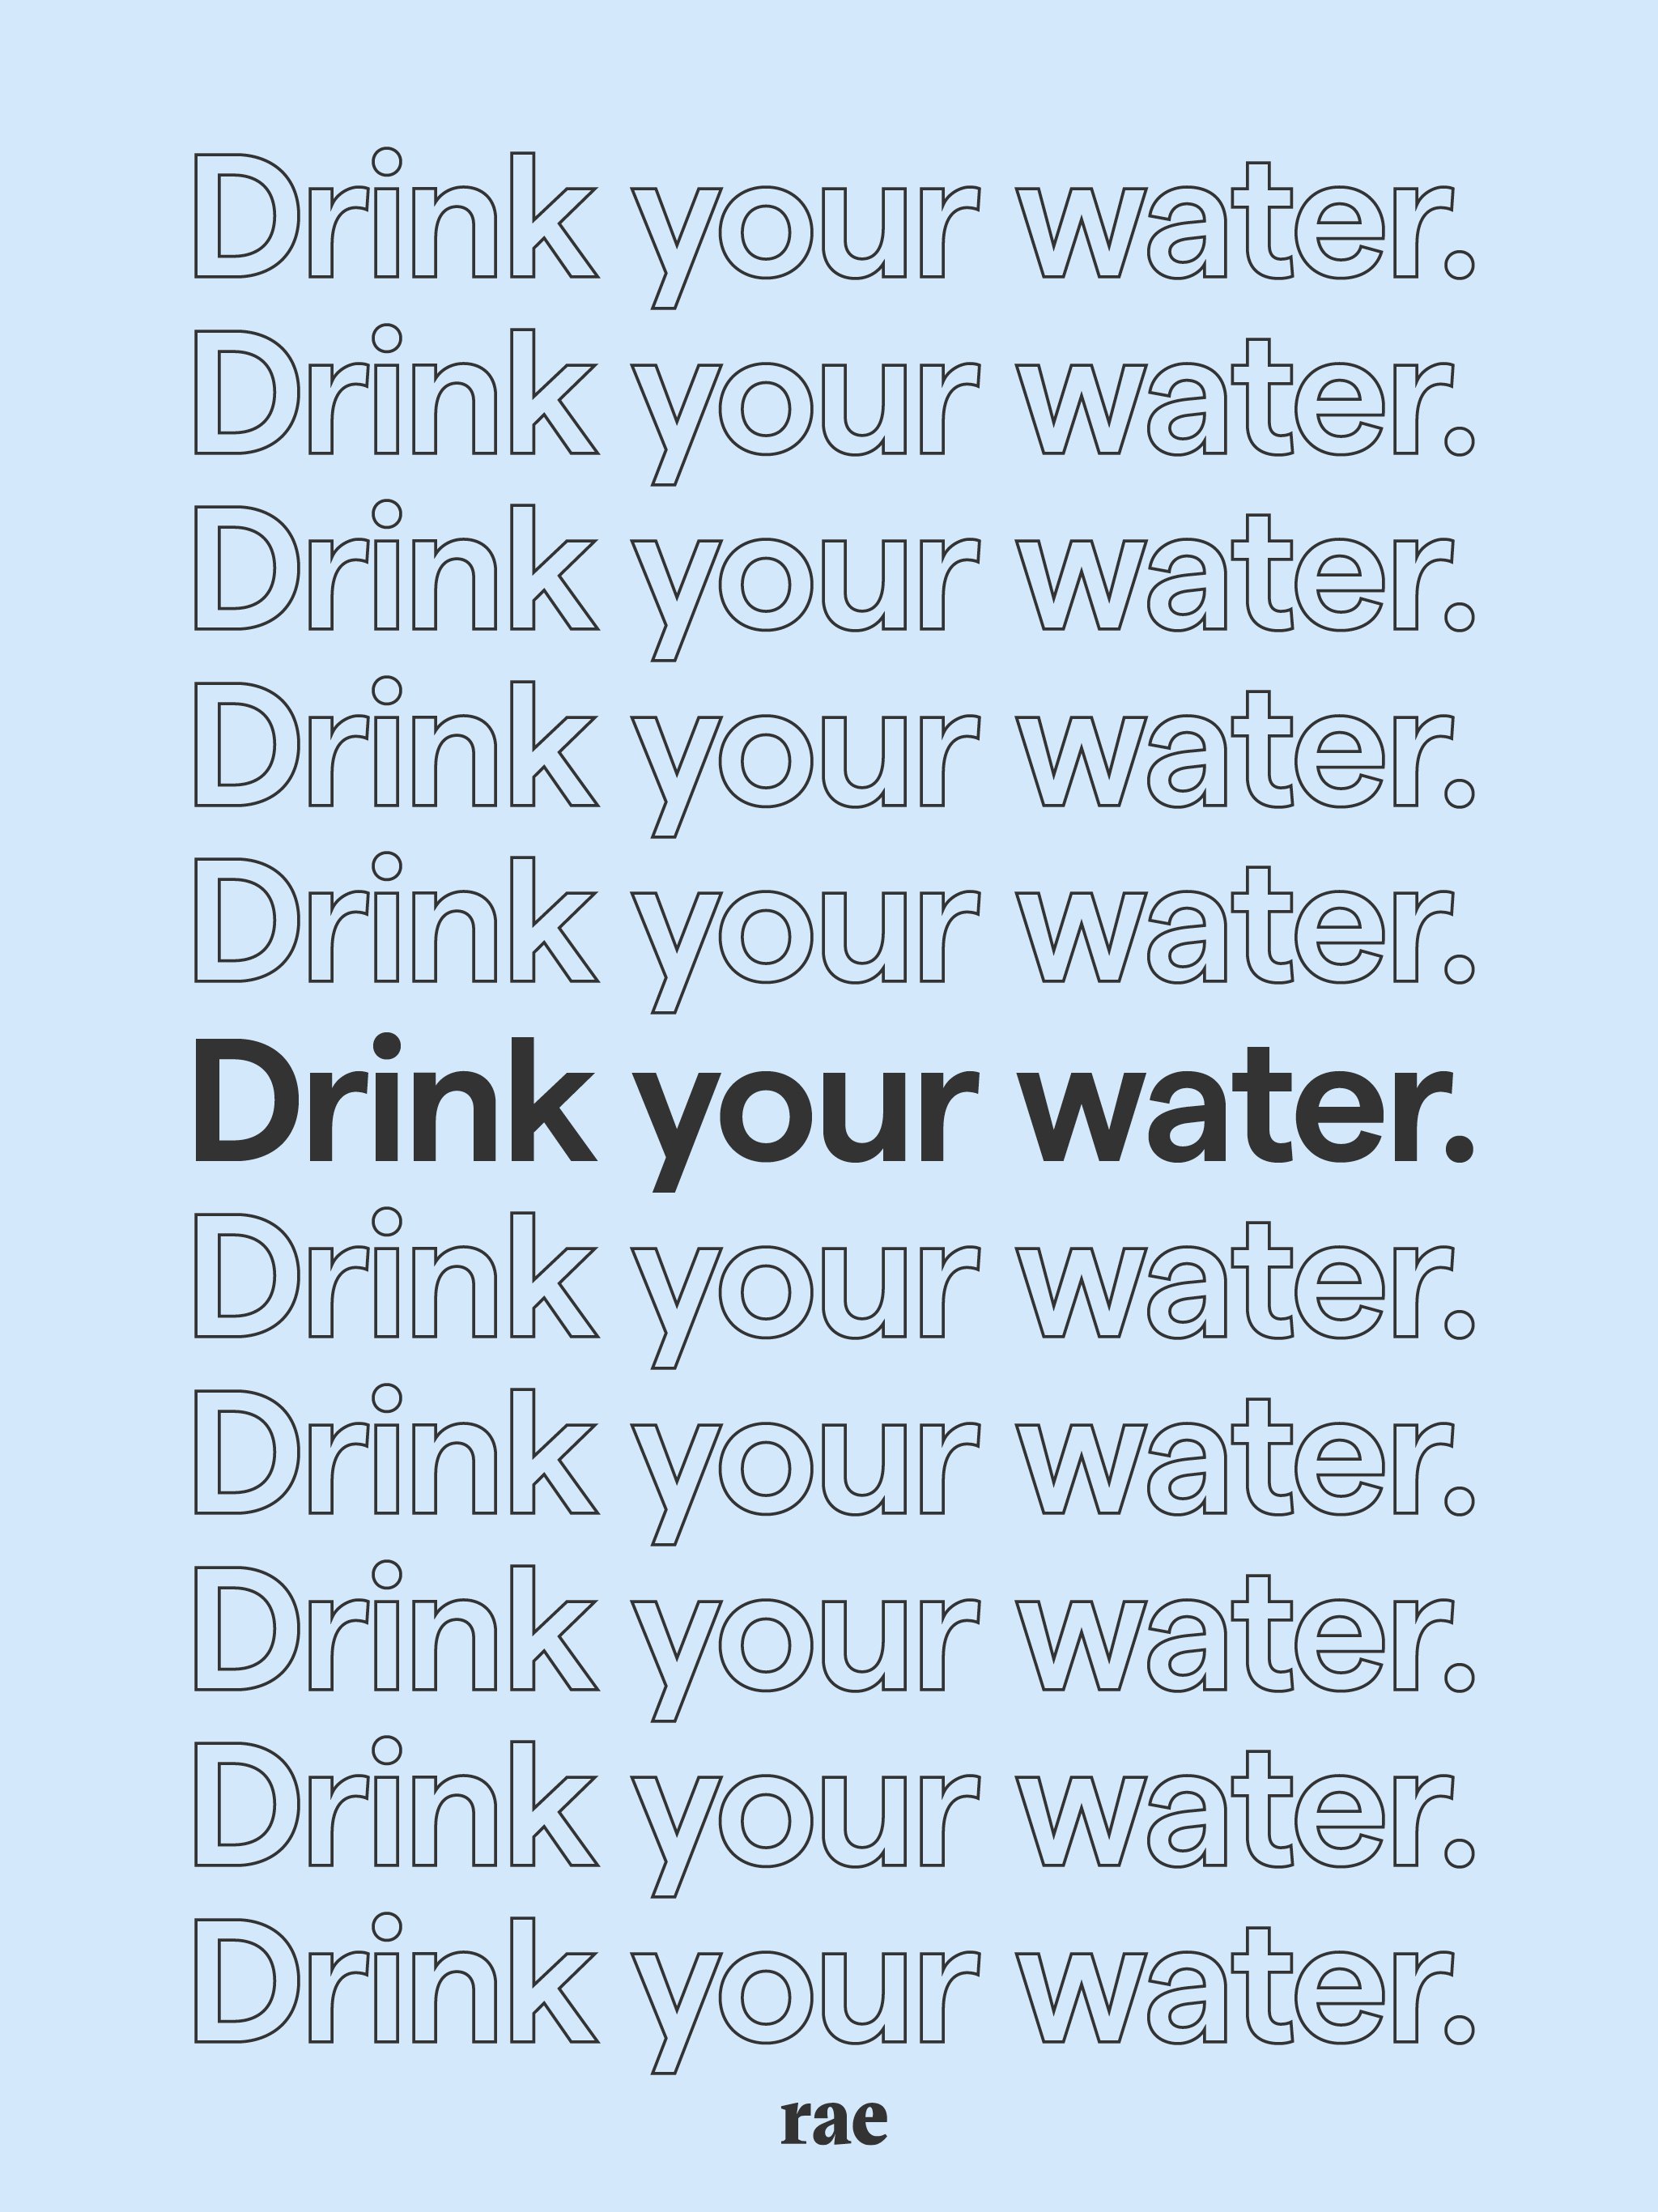 Rae_Drink your water_screensaver_9.jpg